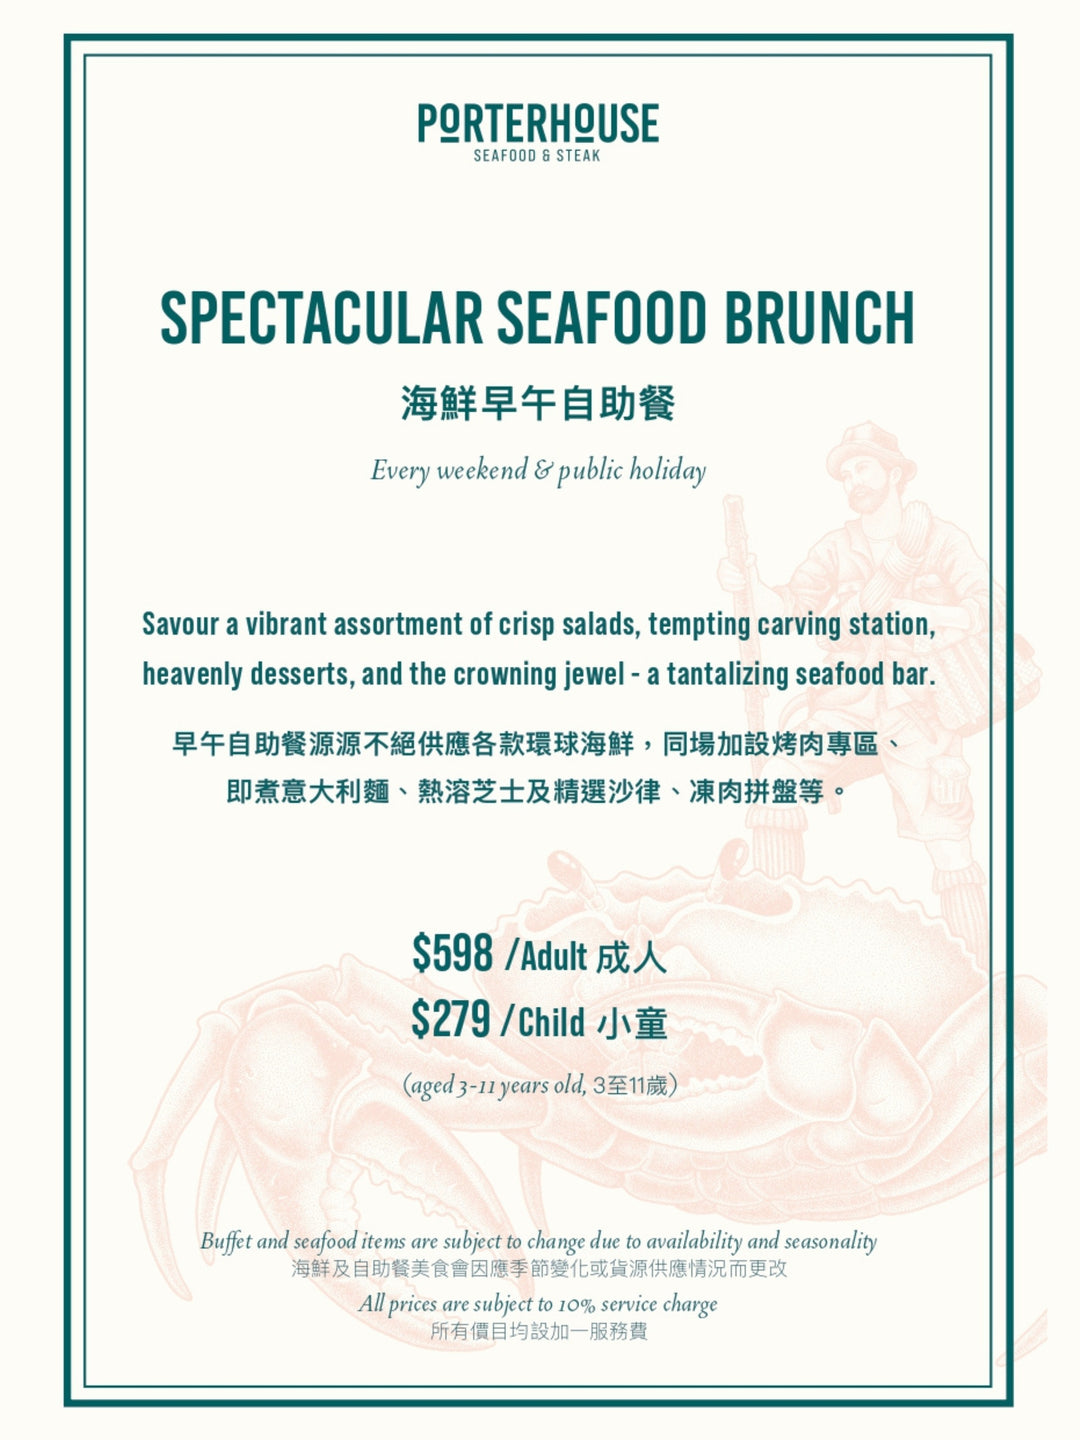 Porterhouse Spectacular Seafood Weekend Brunch (BUY-3-GET-1-FREE) [Deposit]